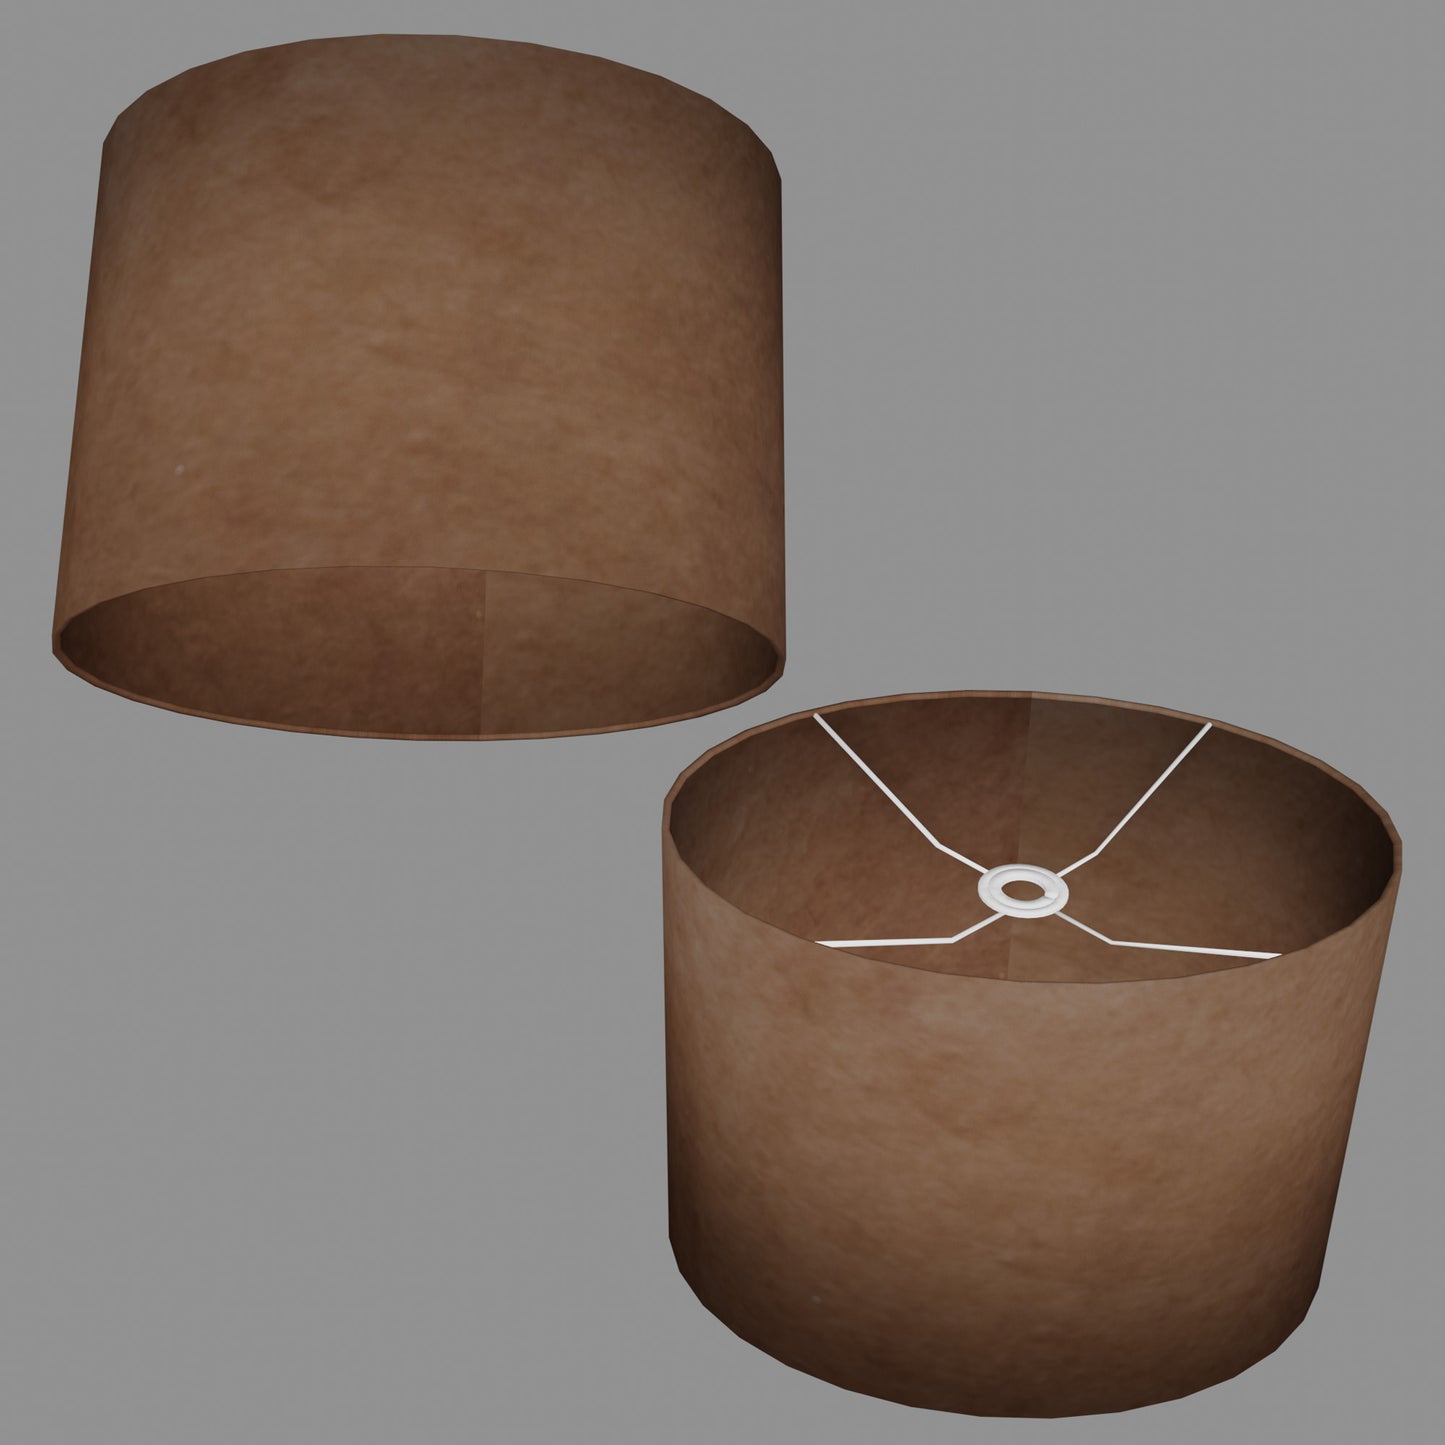 Oval Lamp Shade - P58 - Brown Lokta, 40cm(w) x 30cm(h) x 30cm(d)